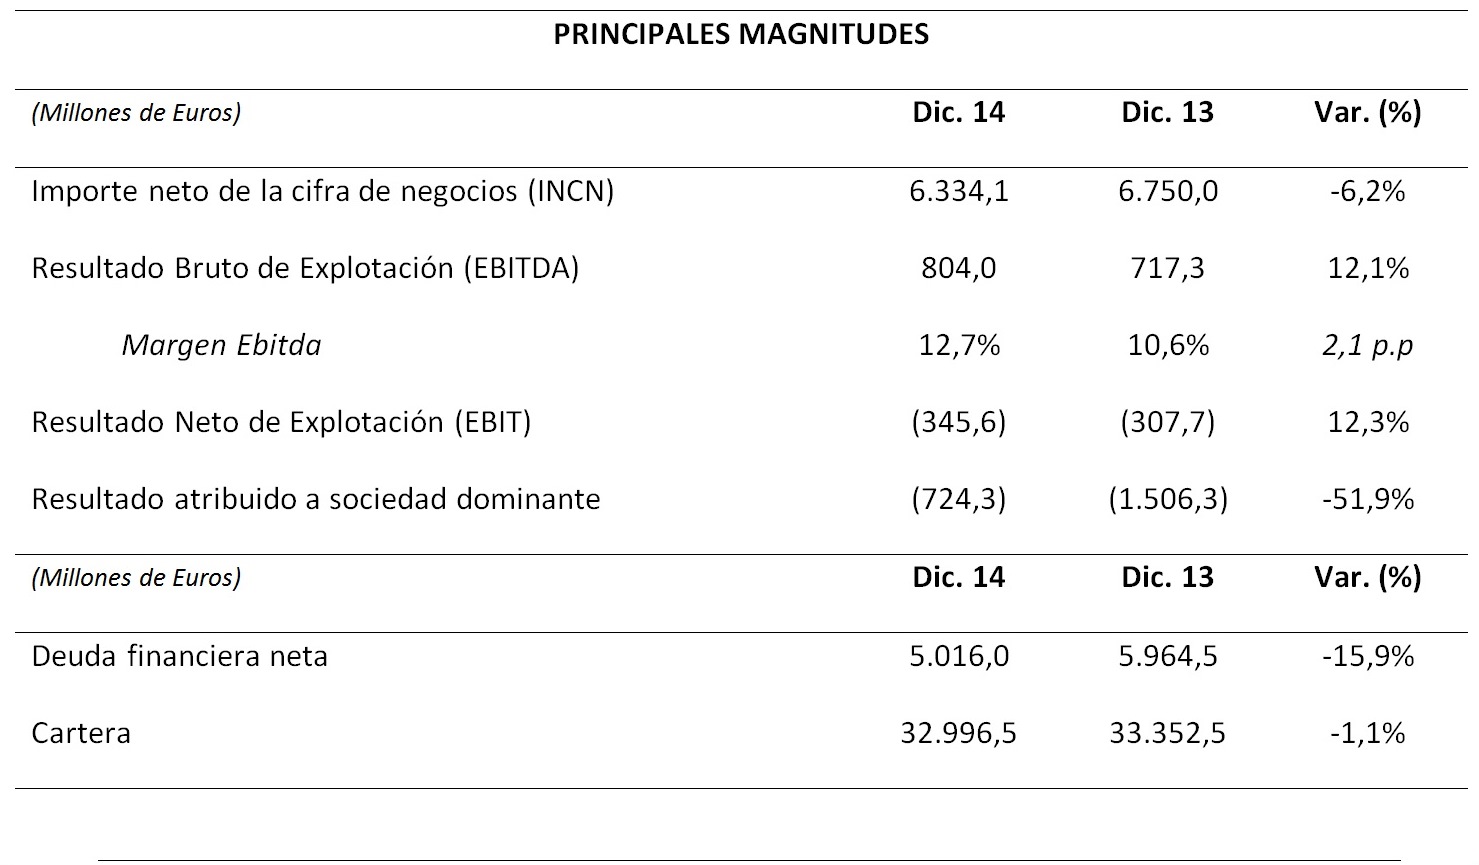 Principales Magnitudes_Resultados 2014. Importe neto de la cigra de negocios (INCN): Diciembre 2014, 6.334,1 Millones de Euros, Diciembre 2013, 6.750 Millones de Euros, Var, -6,2 %. Resultado Bruto de Explotación (EBITDA): Diciembre 2014, 804 Millones de Euros, Diciembre: 717,3 Millones de Euros, Var, 12,1%. Margen Ebitda: Diciembre 2014, 12,7 %, Diciembre 2013, 10,6 %, Var, 2,1 p.p. Resultado Neto de Explotación (EBIT): Diciembre 2014, 345,6 Millones de Euros, Diciembre 2013, 307,7 Millones de Euros, Var, 12,3 %. Resultado atribuido a sociedad dominante: Diciembre, 724,3 Millones de Euros, Diciembre 2013, 1.506,3 Millones de Euros, Var, -51,9 %. Deuda financiera neta: Diciembre 2014, 5.016 Millones de Euros, Diciembre 2013, 5.964,5, Var, -15,9 %. Cartera: Diciembre 2014: 32.996,5 Millones de Euros, Diciembre 2013, 33.352,5 Millones de Euros, Var, -1,1 %